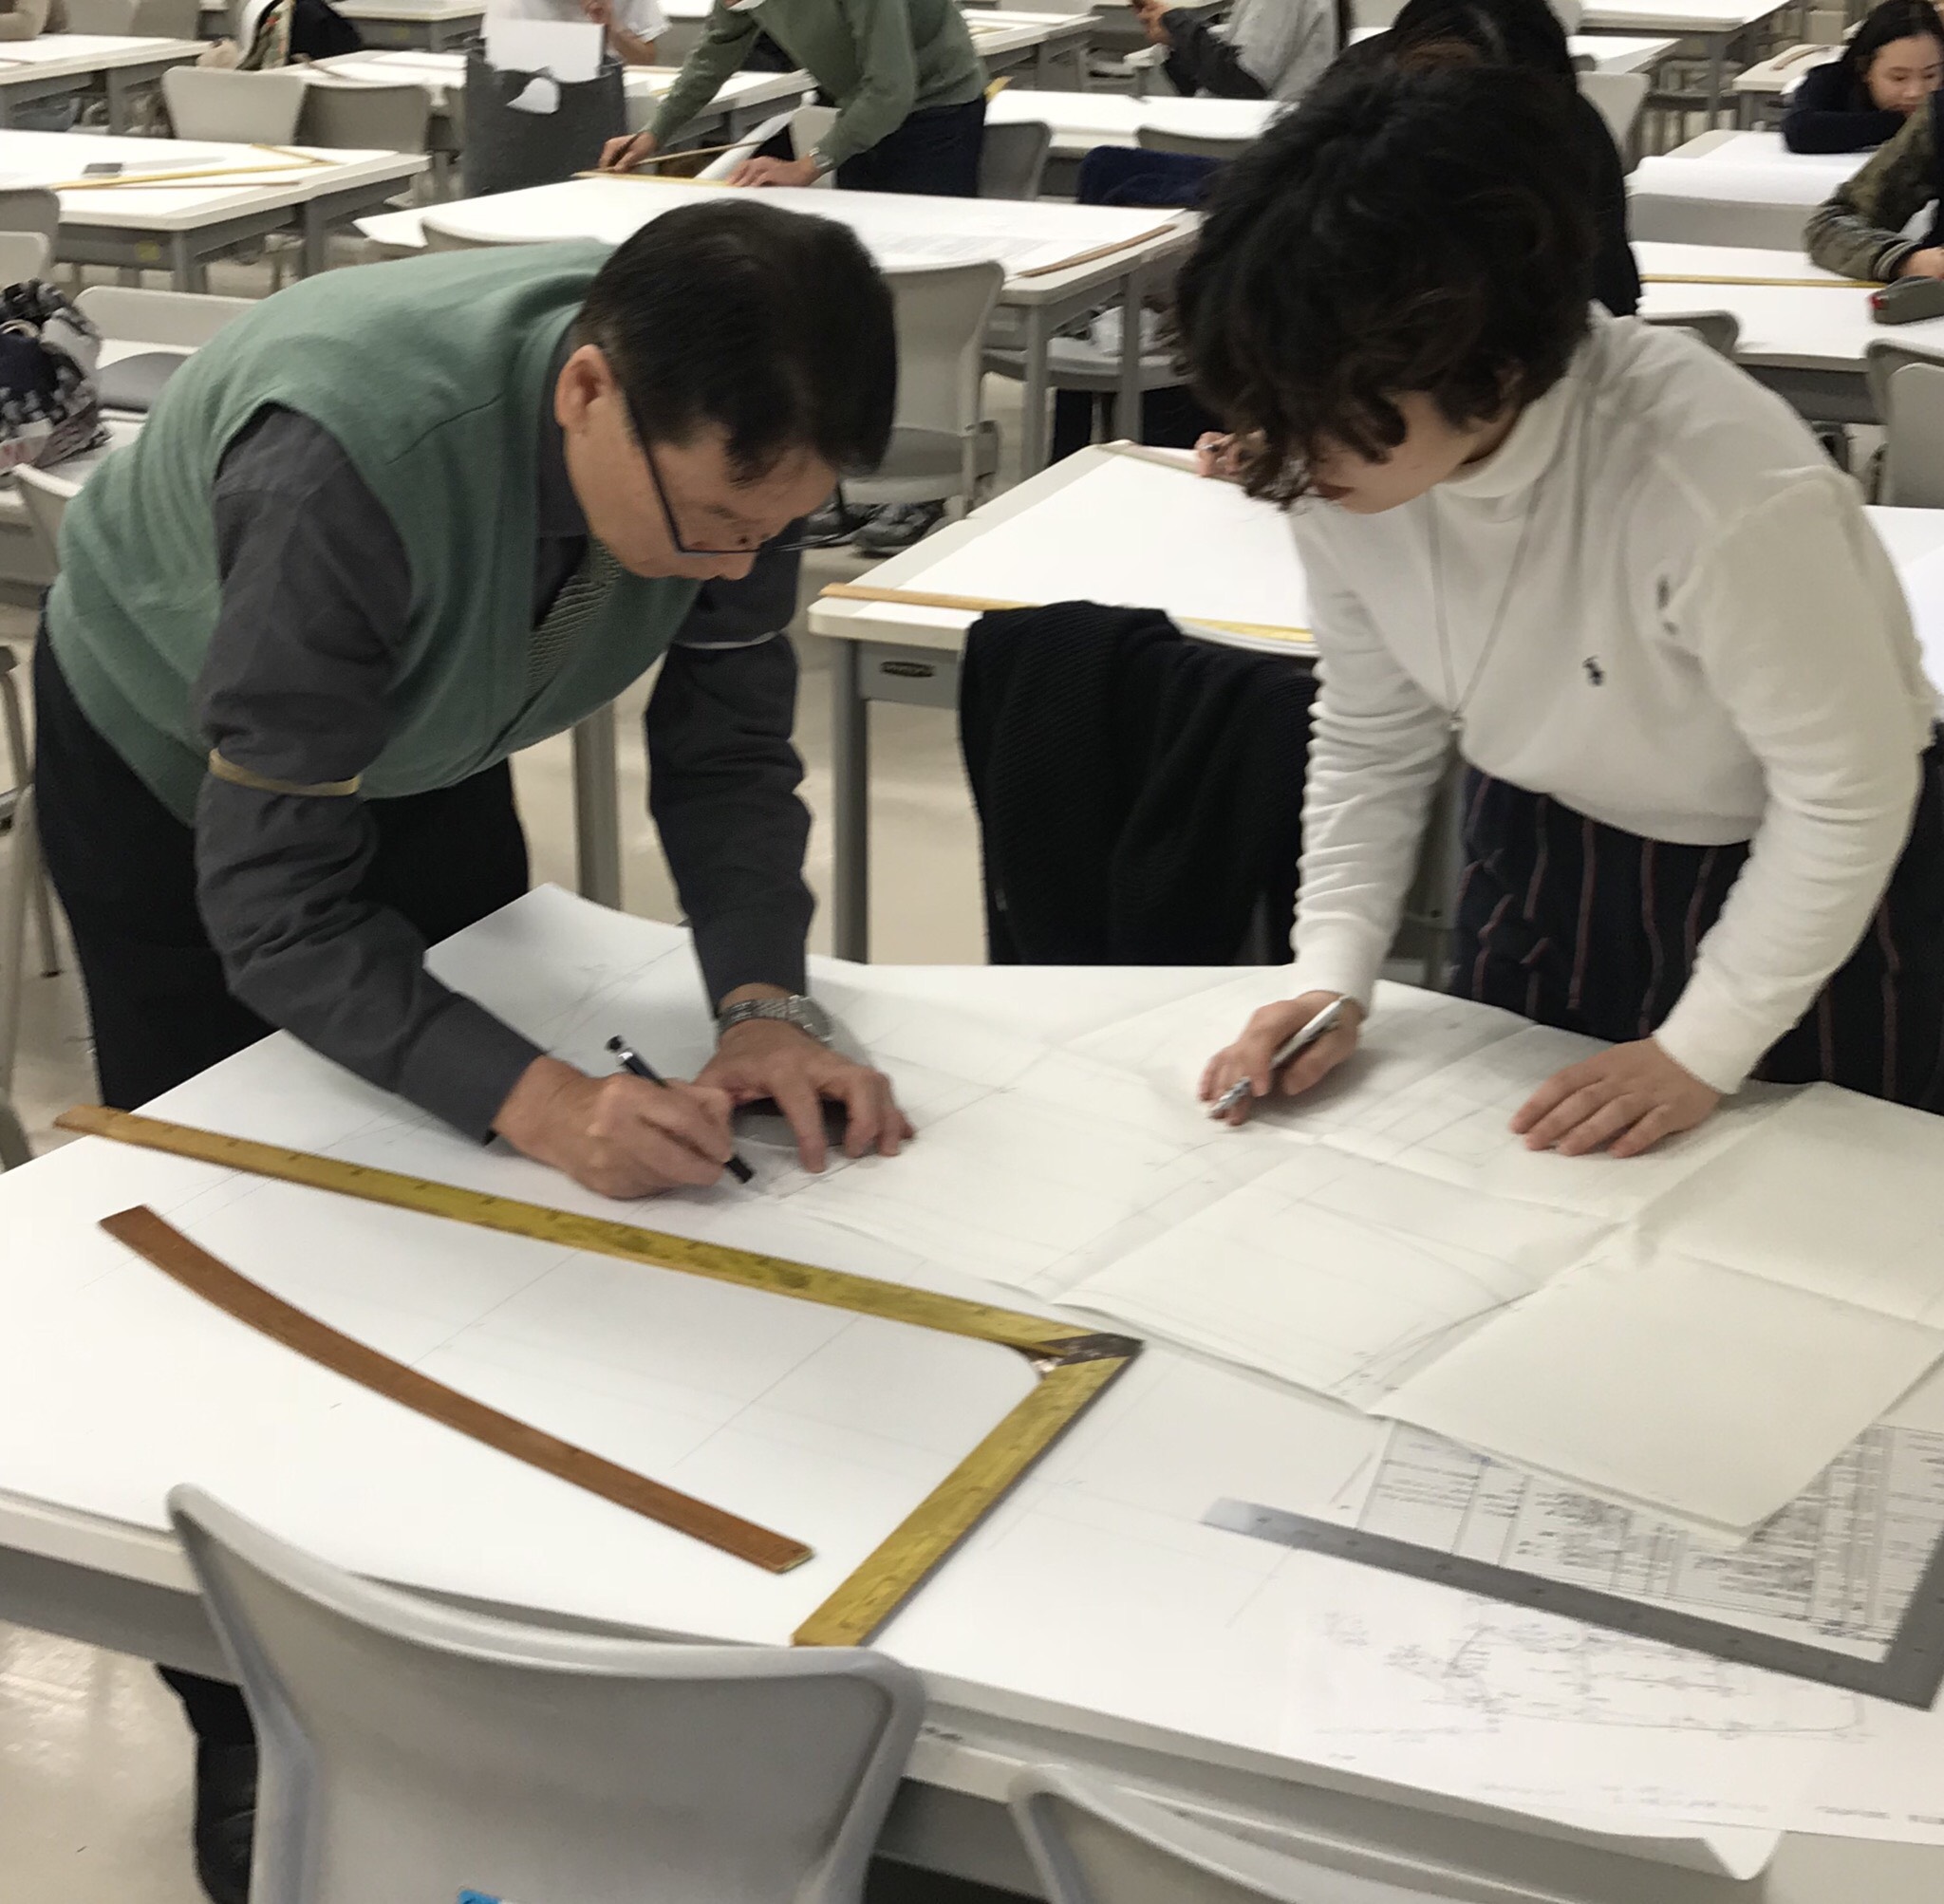 テーラーリング界の重鎮、小川登先生によるパターンデザイン論は好きな授業の一つ。「毎週教えてくださり、とても光栄です」